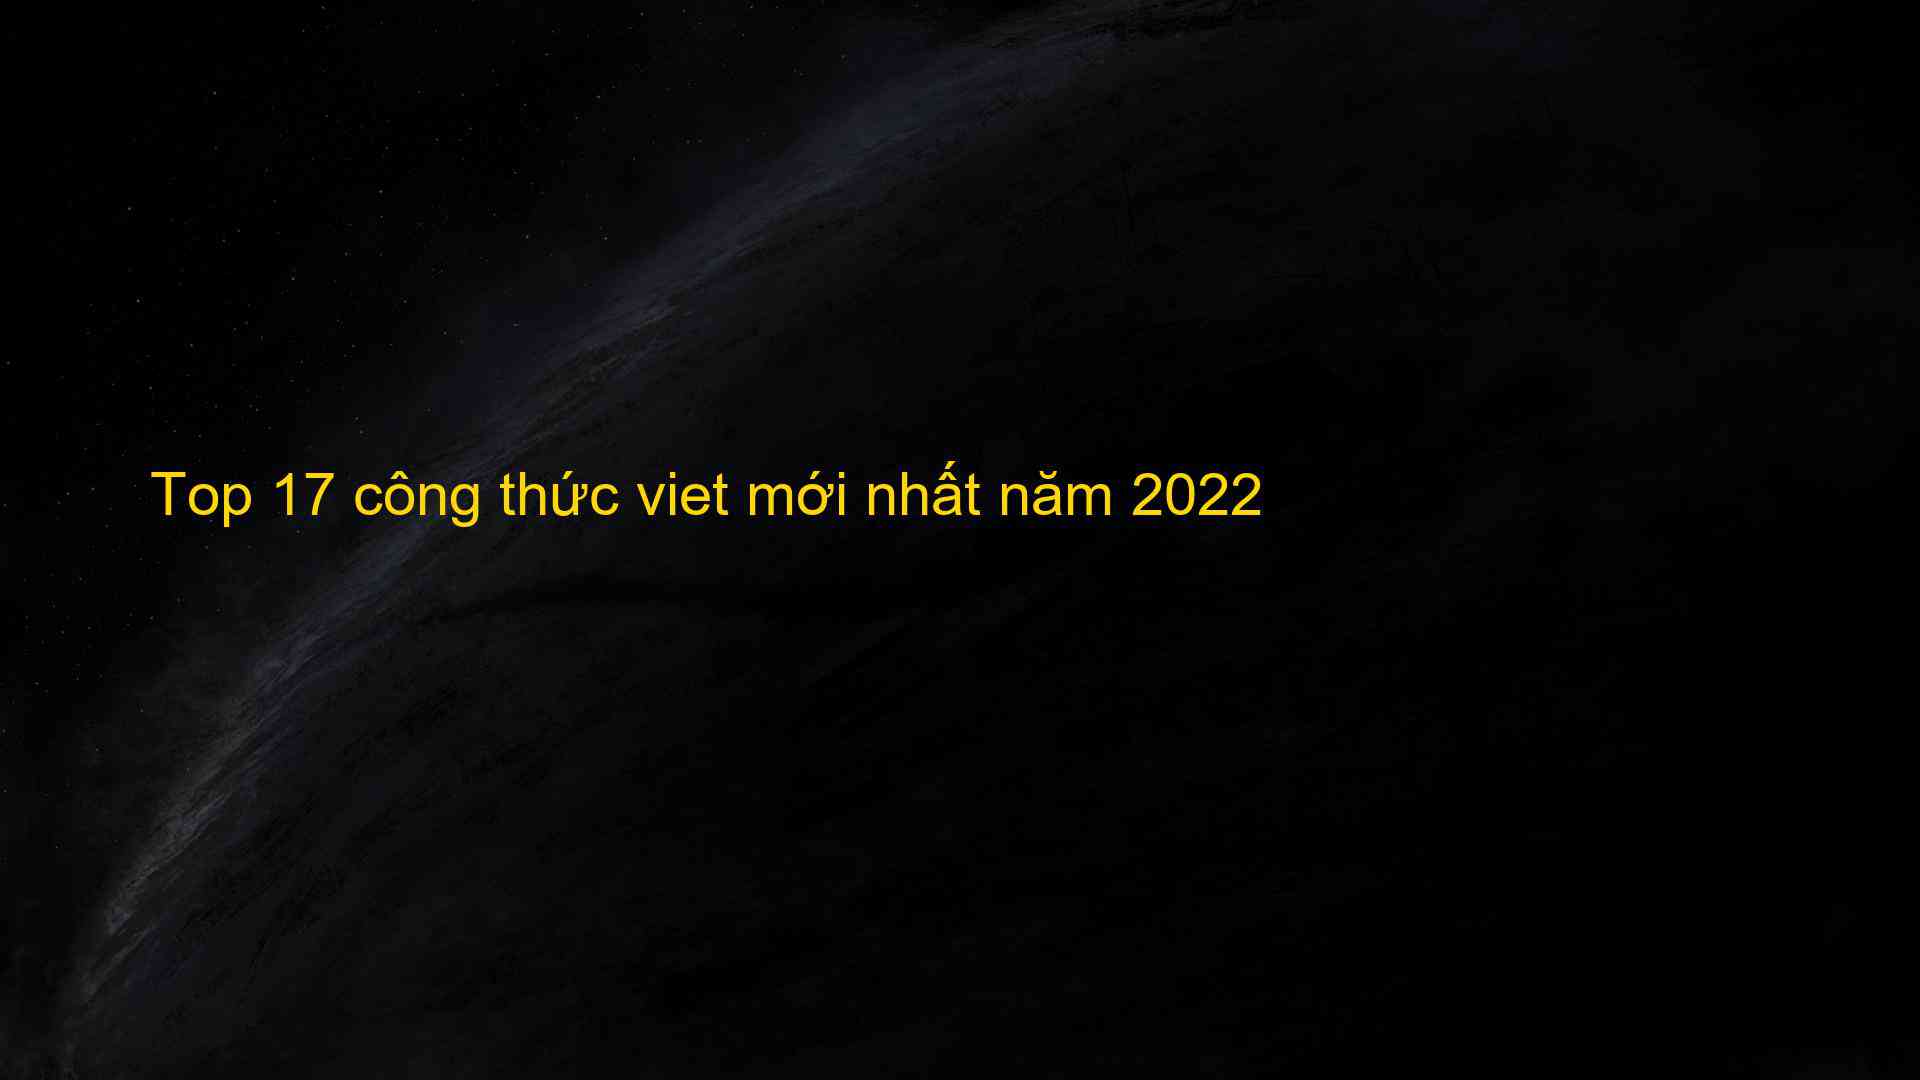 Top 17 cong thuc viet moi nhat nam 2022 1659713918